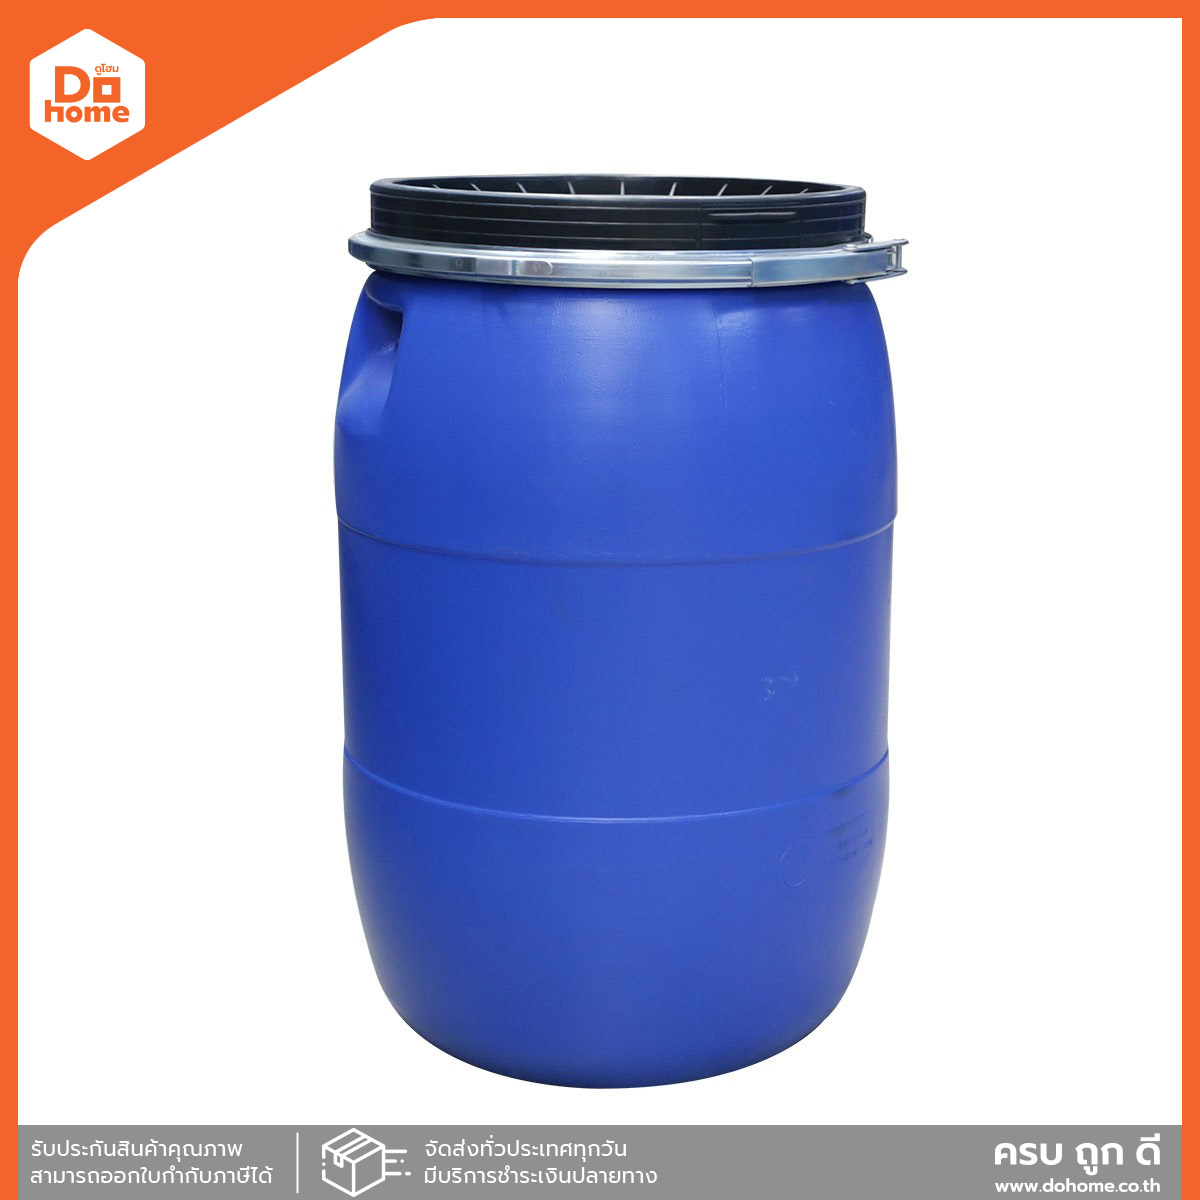 ถังน้ำพลาสติกพร้อมฝา 120 ลิตร รุ่น DM09 สีฟ้า |BAI|